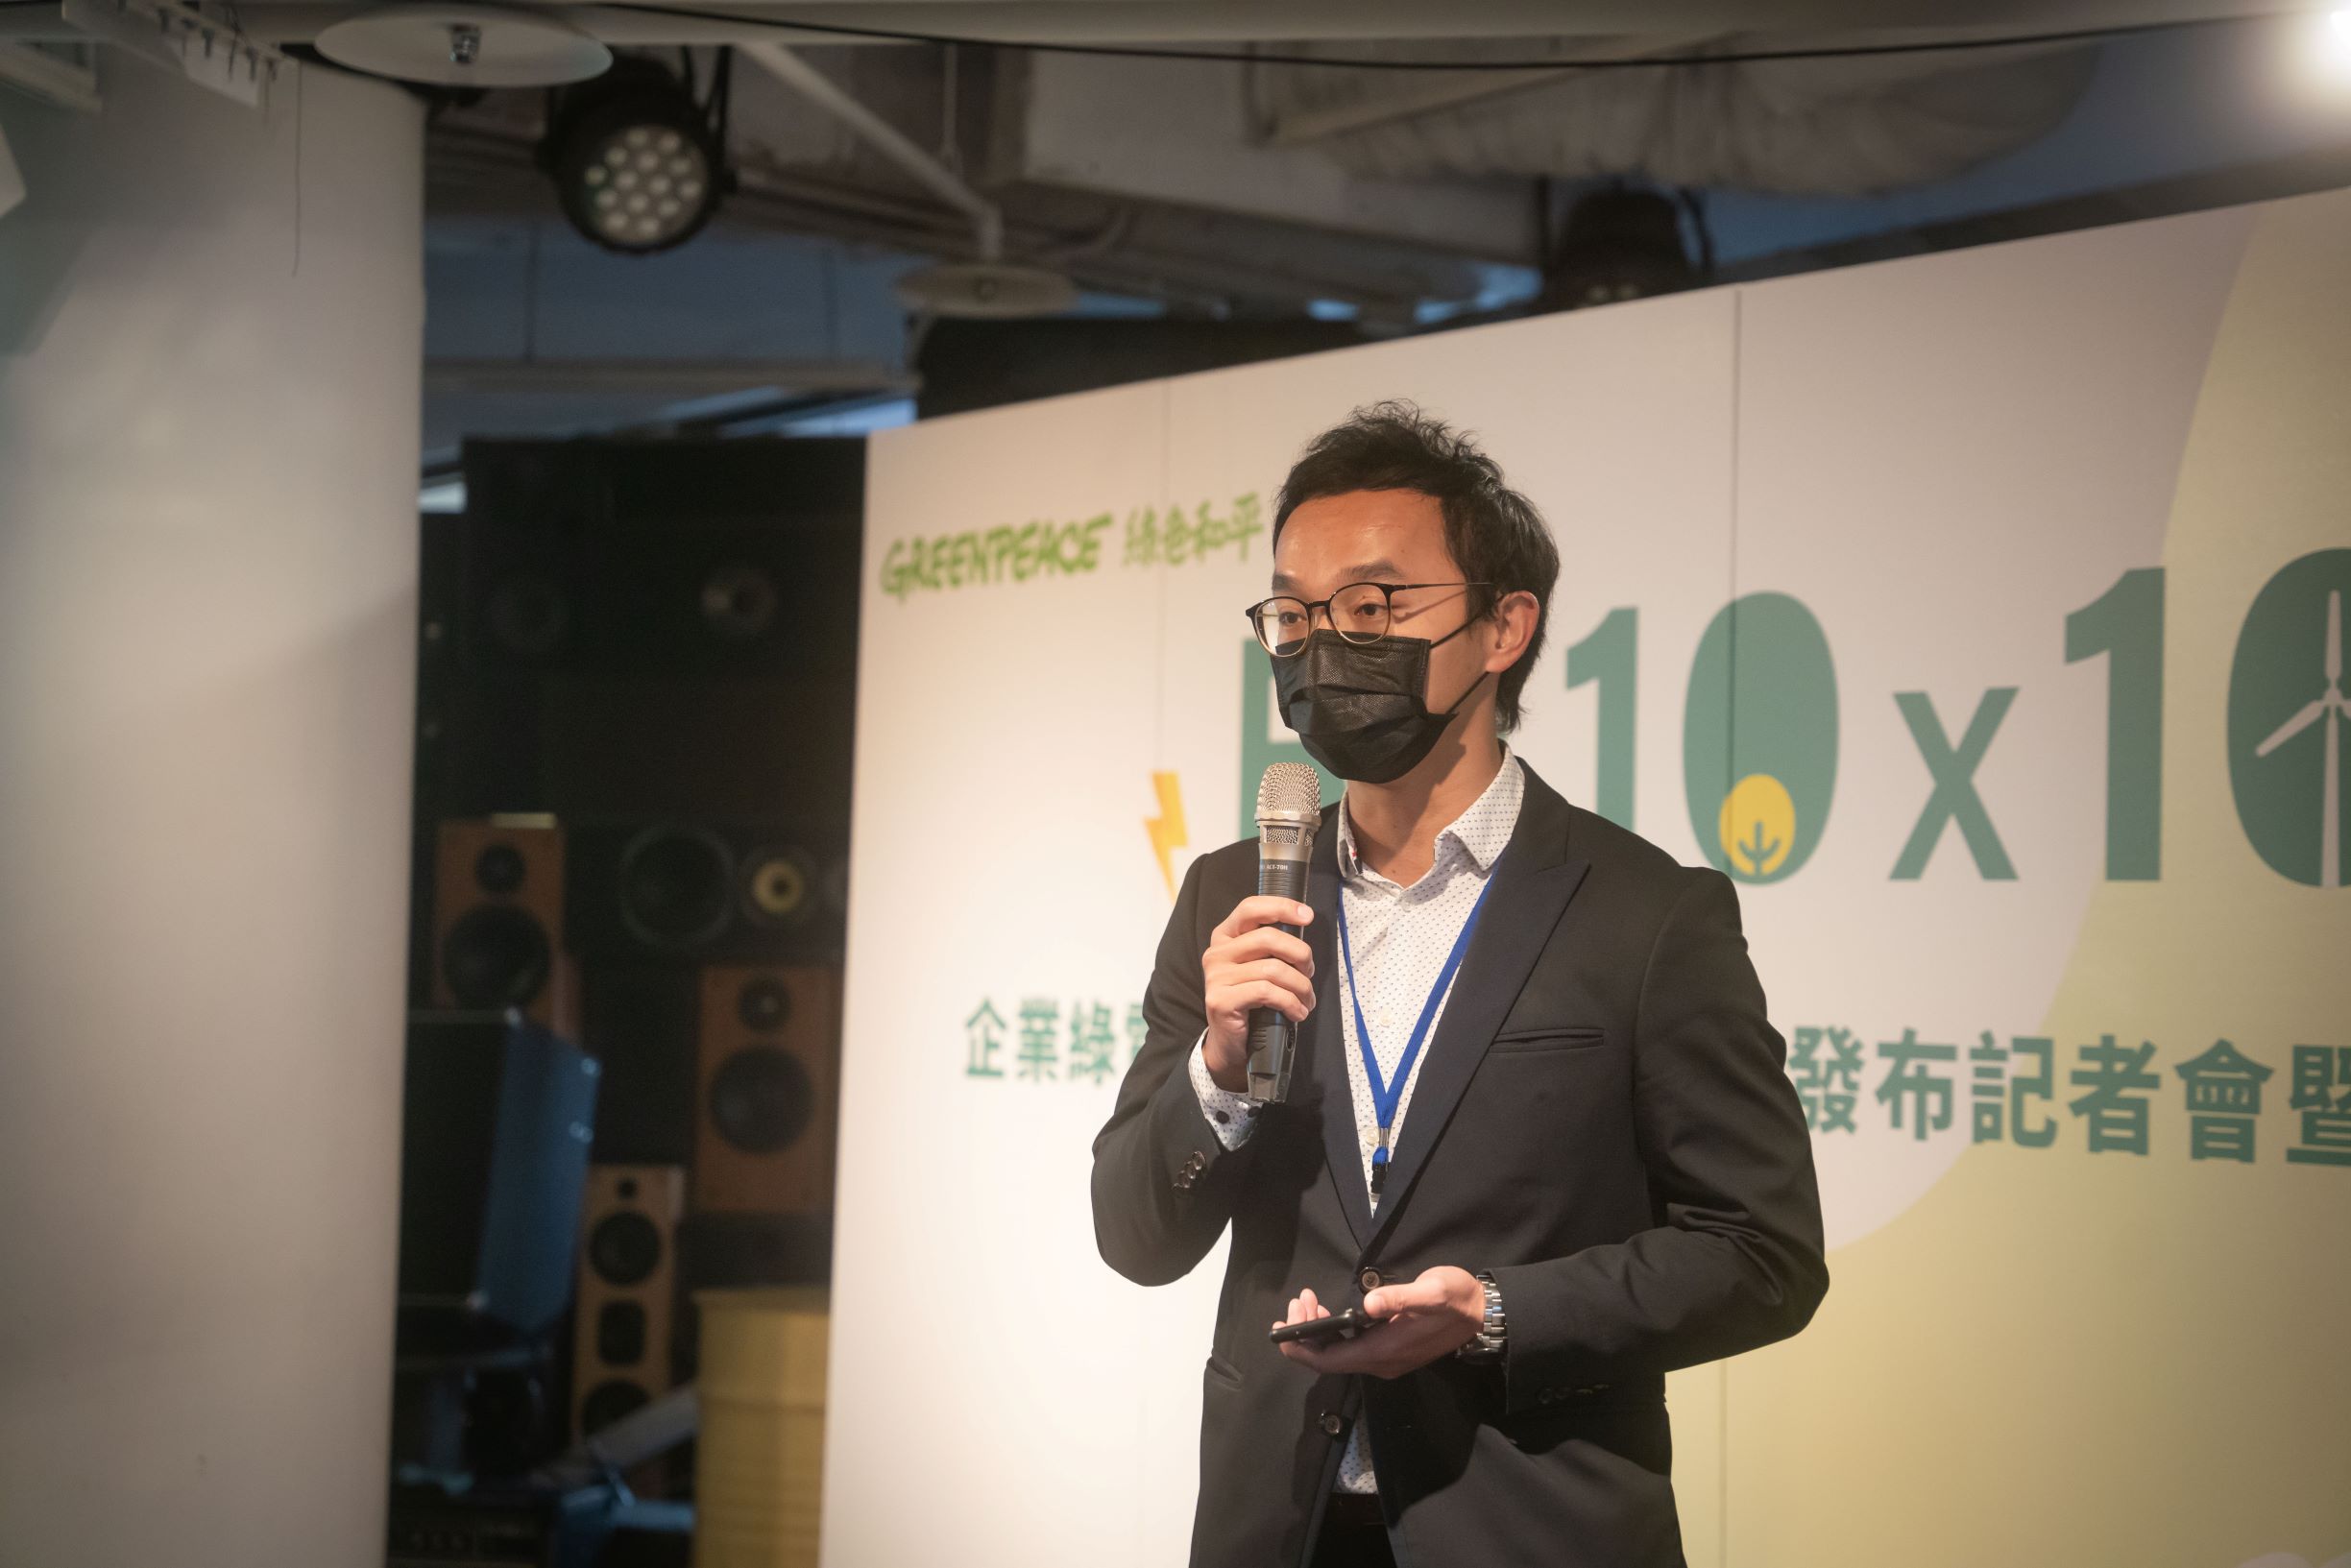 綠色和平專案經理古偉牧指出，綠色和平在推動RE10x10綠電倡議時，發現臺灣企業在實際參與再生能源採購的過程中存在許多困難，亟需政府完善各界參與能源轉型的途徑。